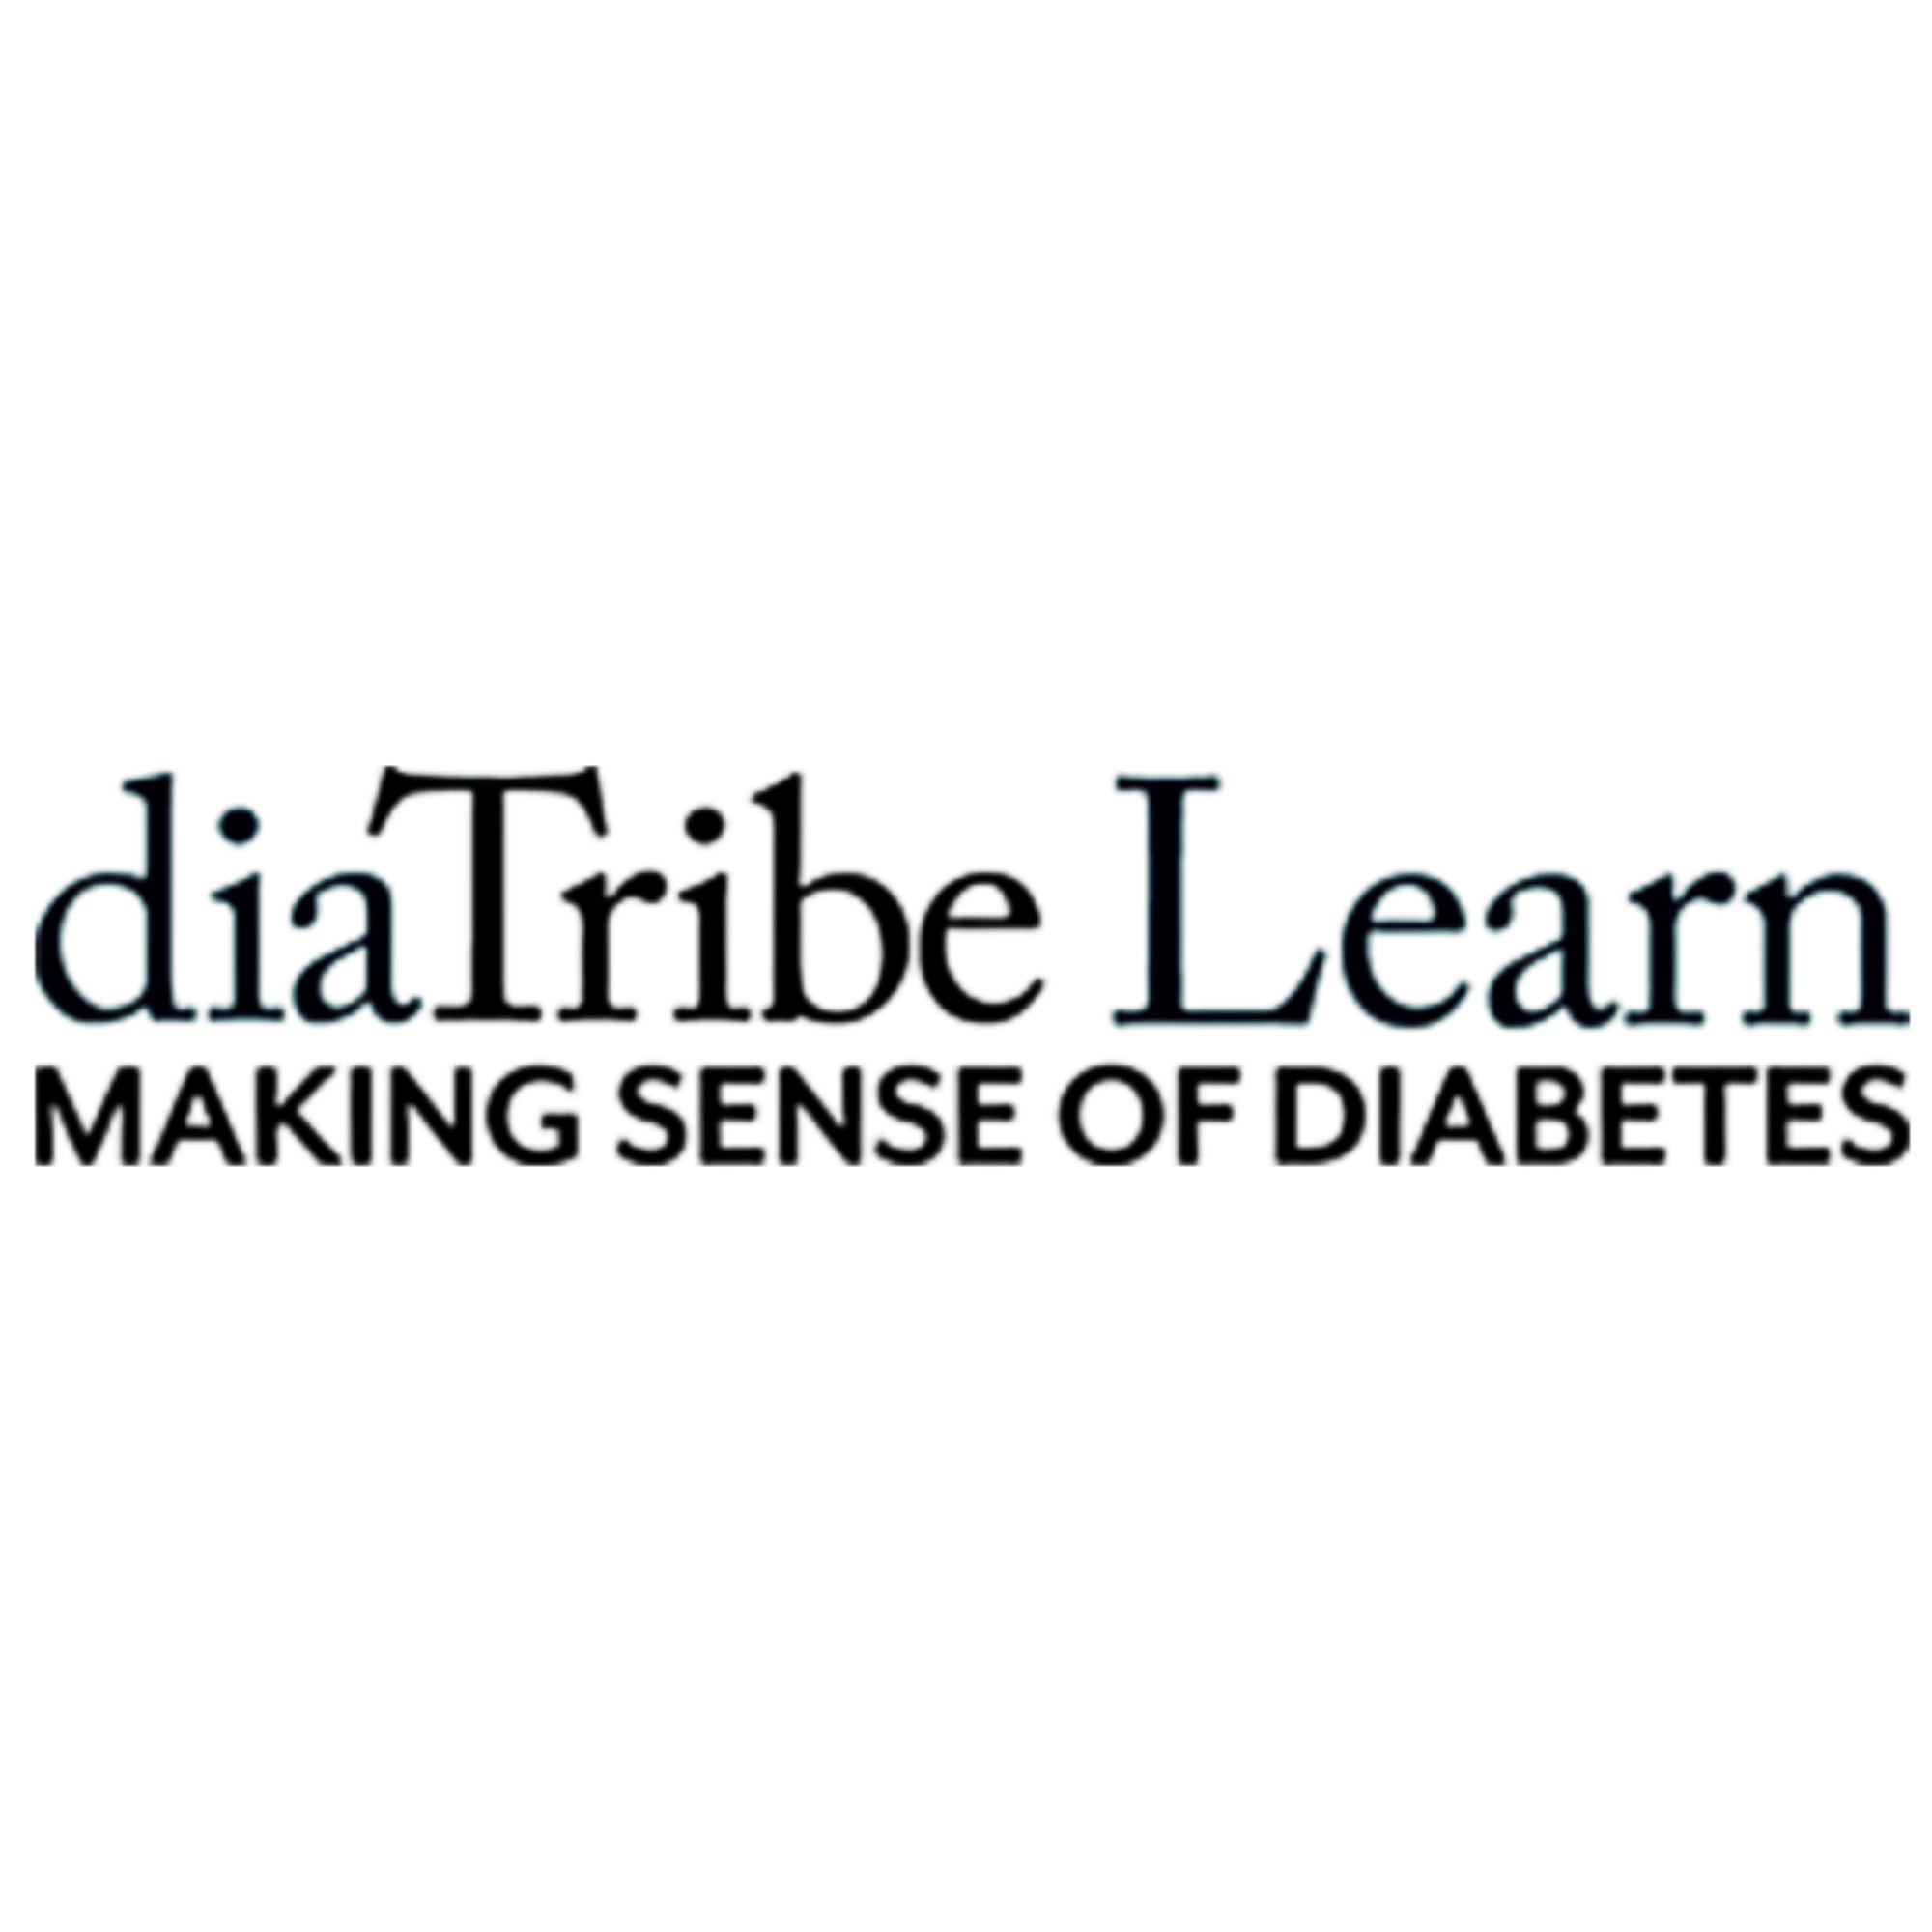 amanda kirpitch dietitian diabetes